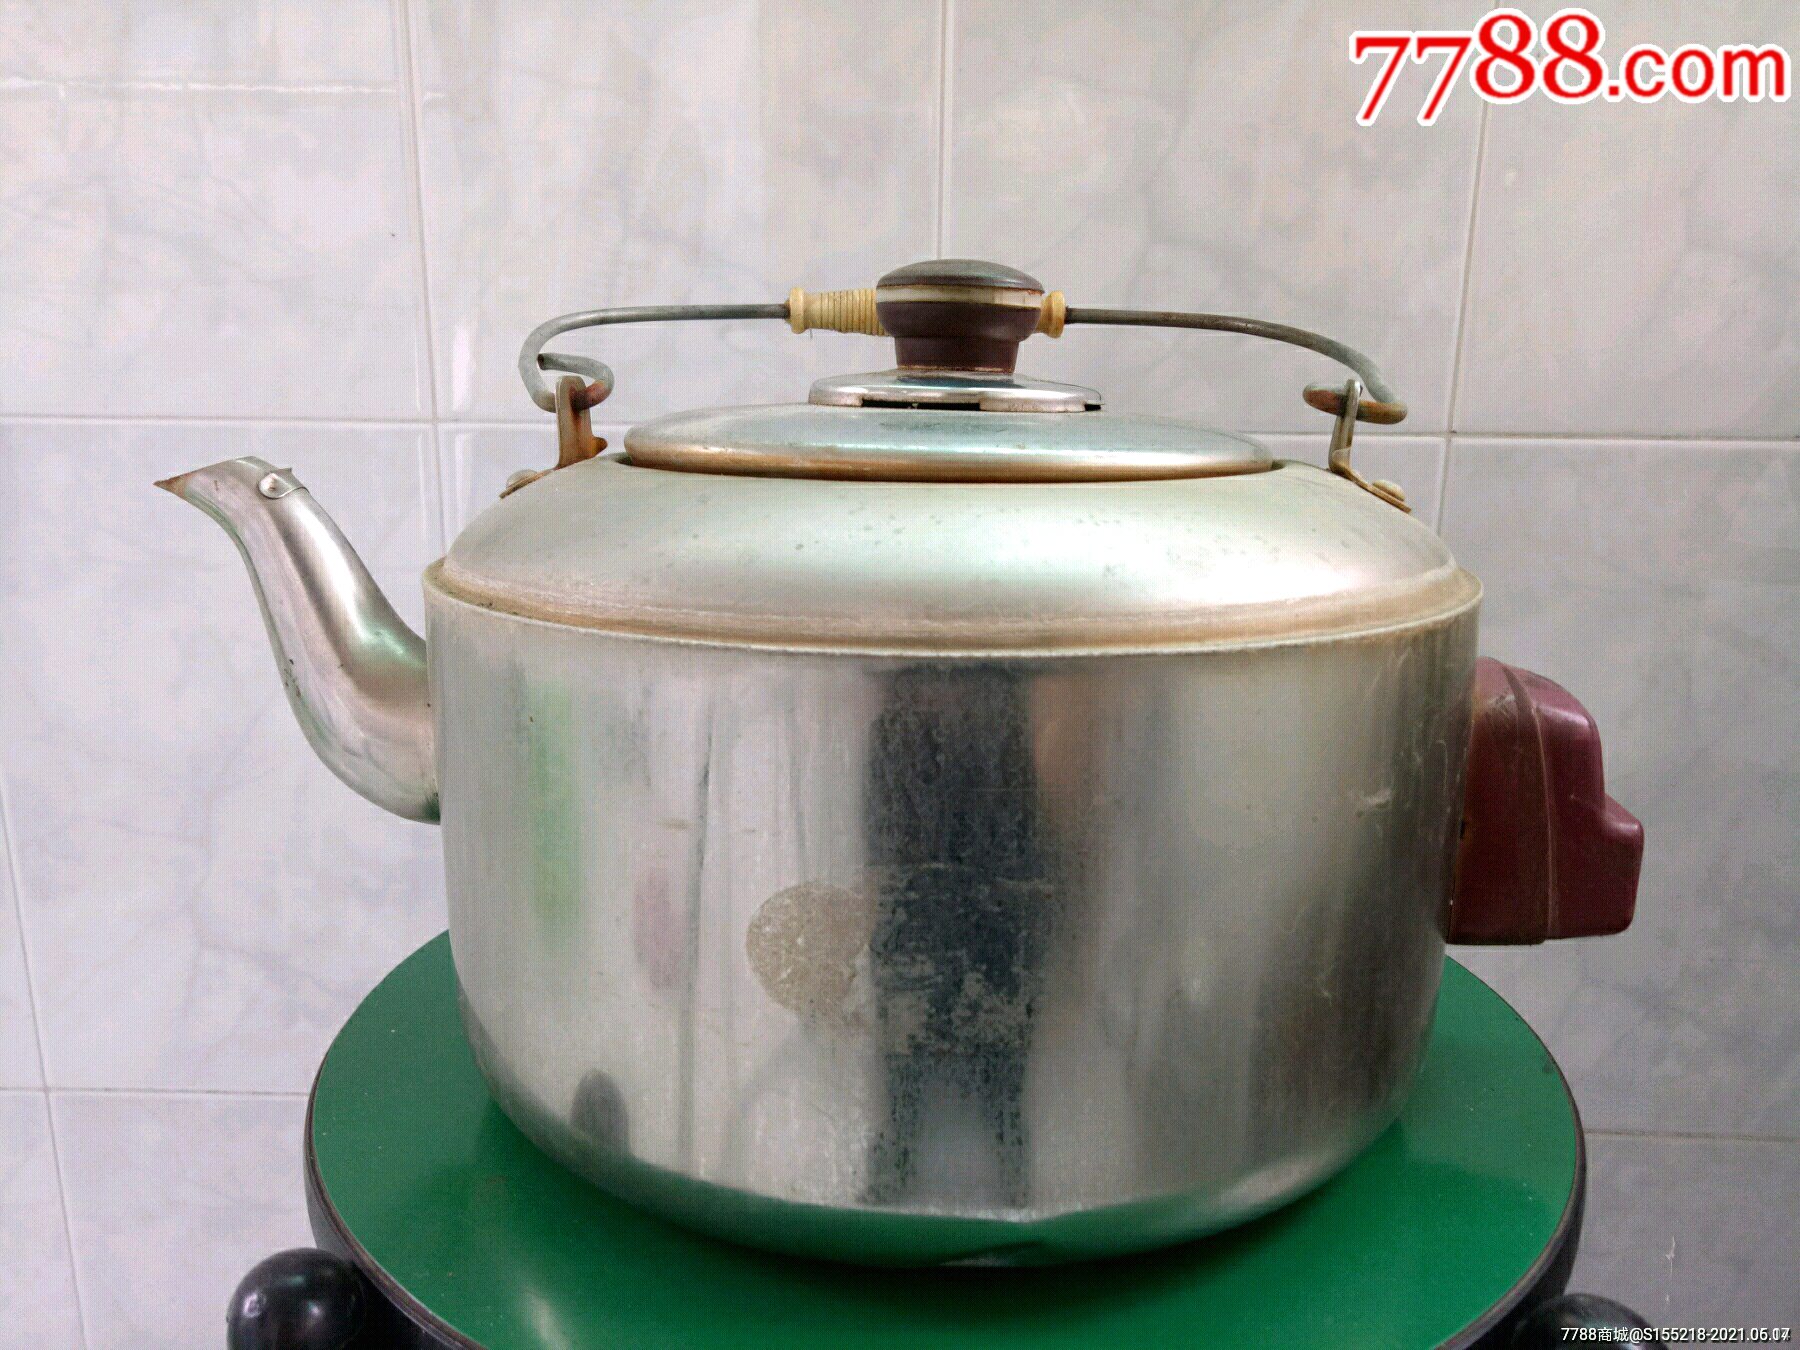 老式铝合金电水壶一件厚重坚固老铝壶优点是烧水无一丝怪味正常使用